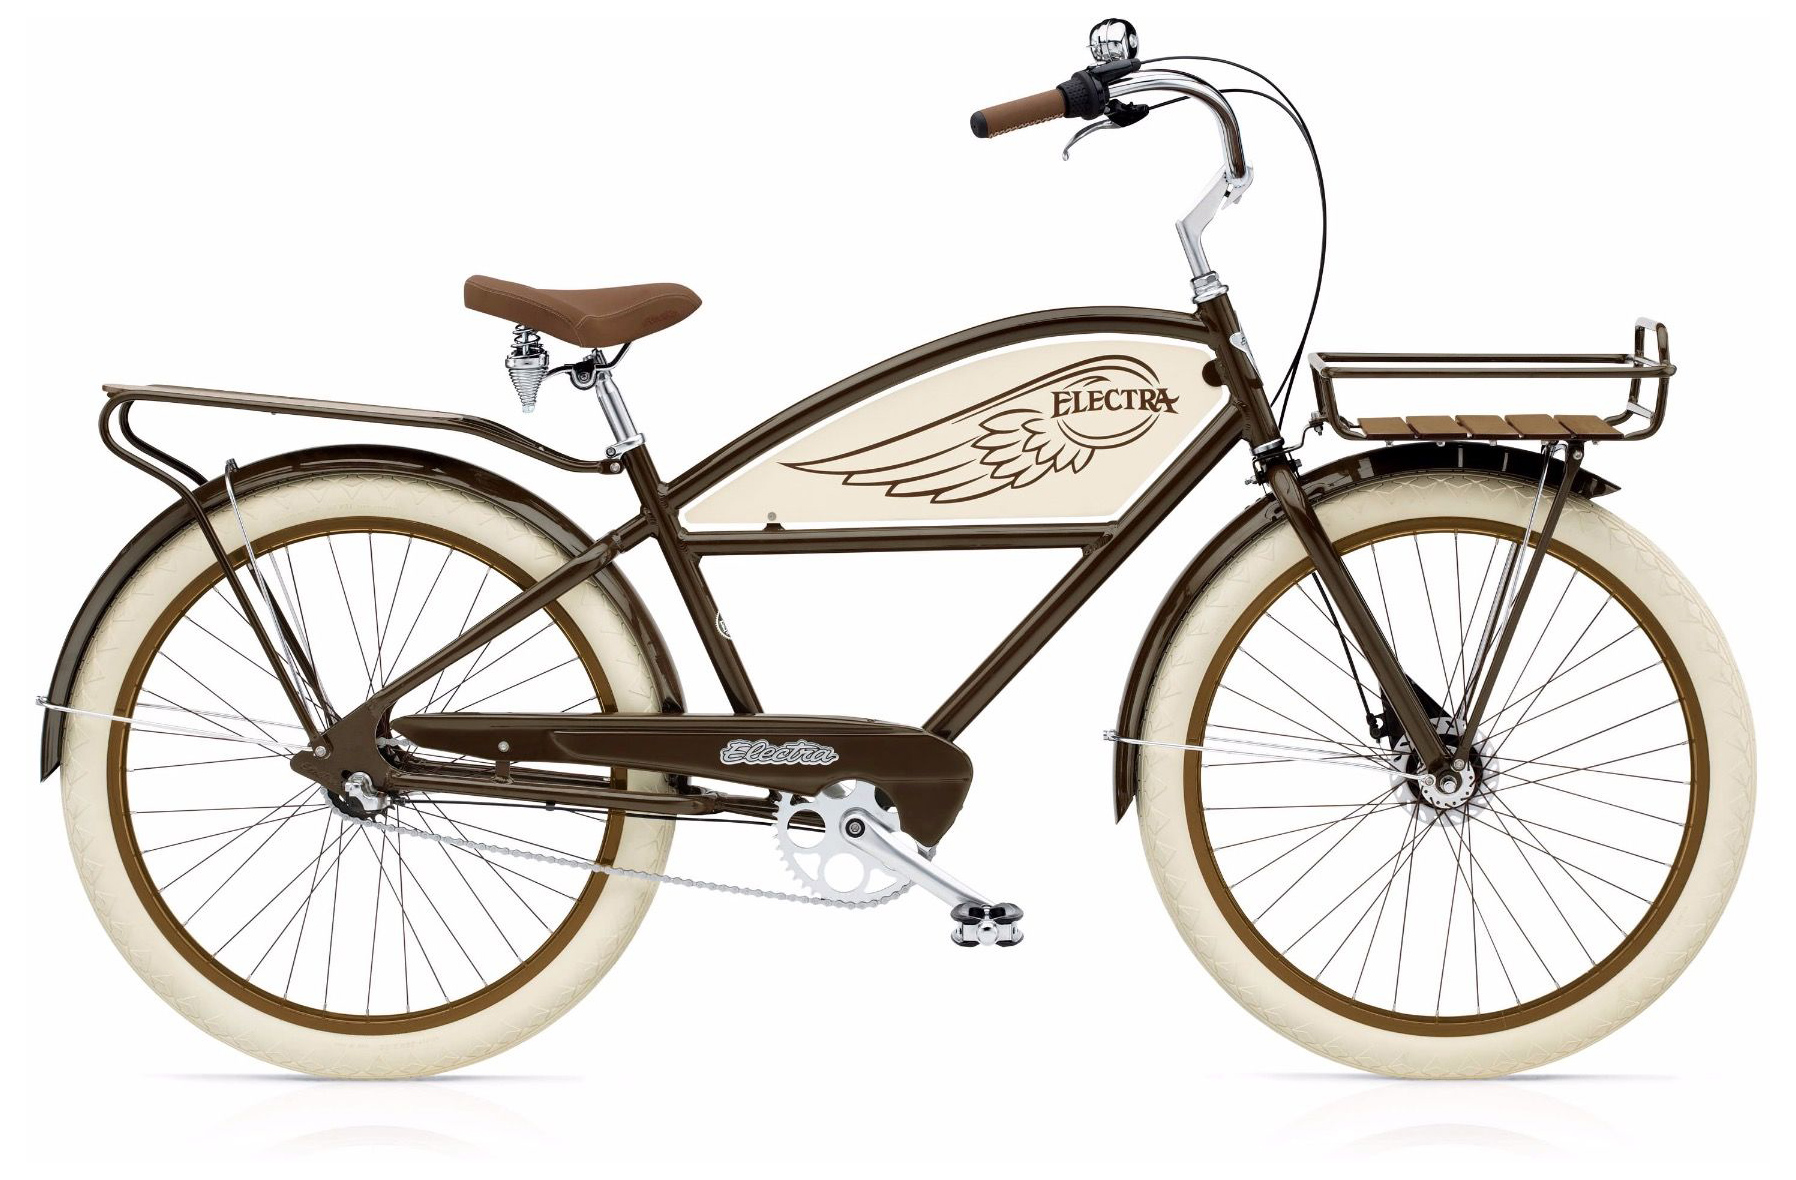  Отзывы о Велосипеде круизере Electra Delivery 3i 2019